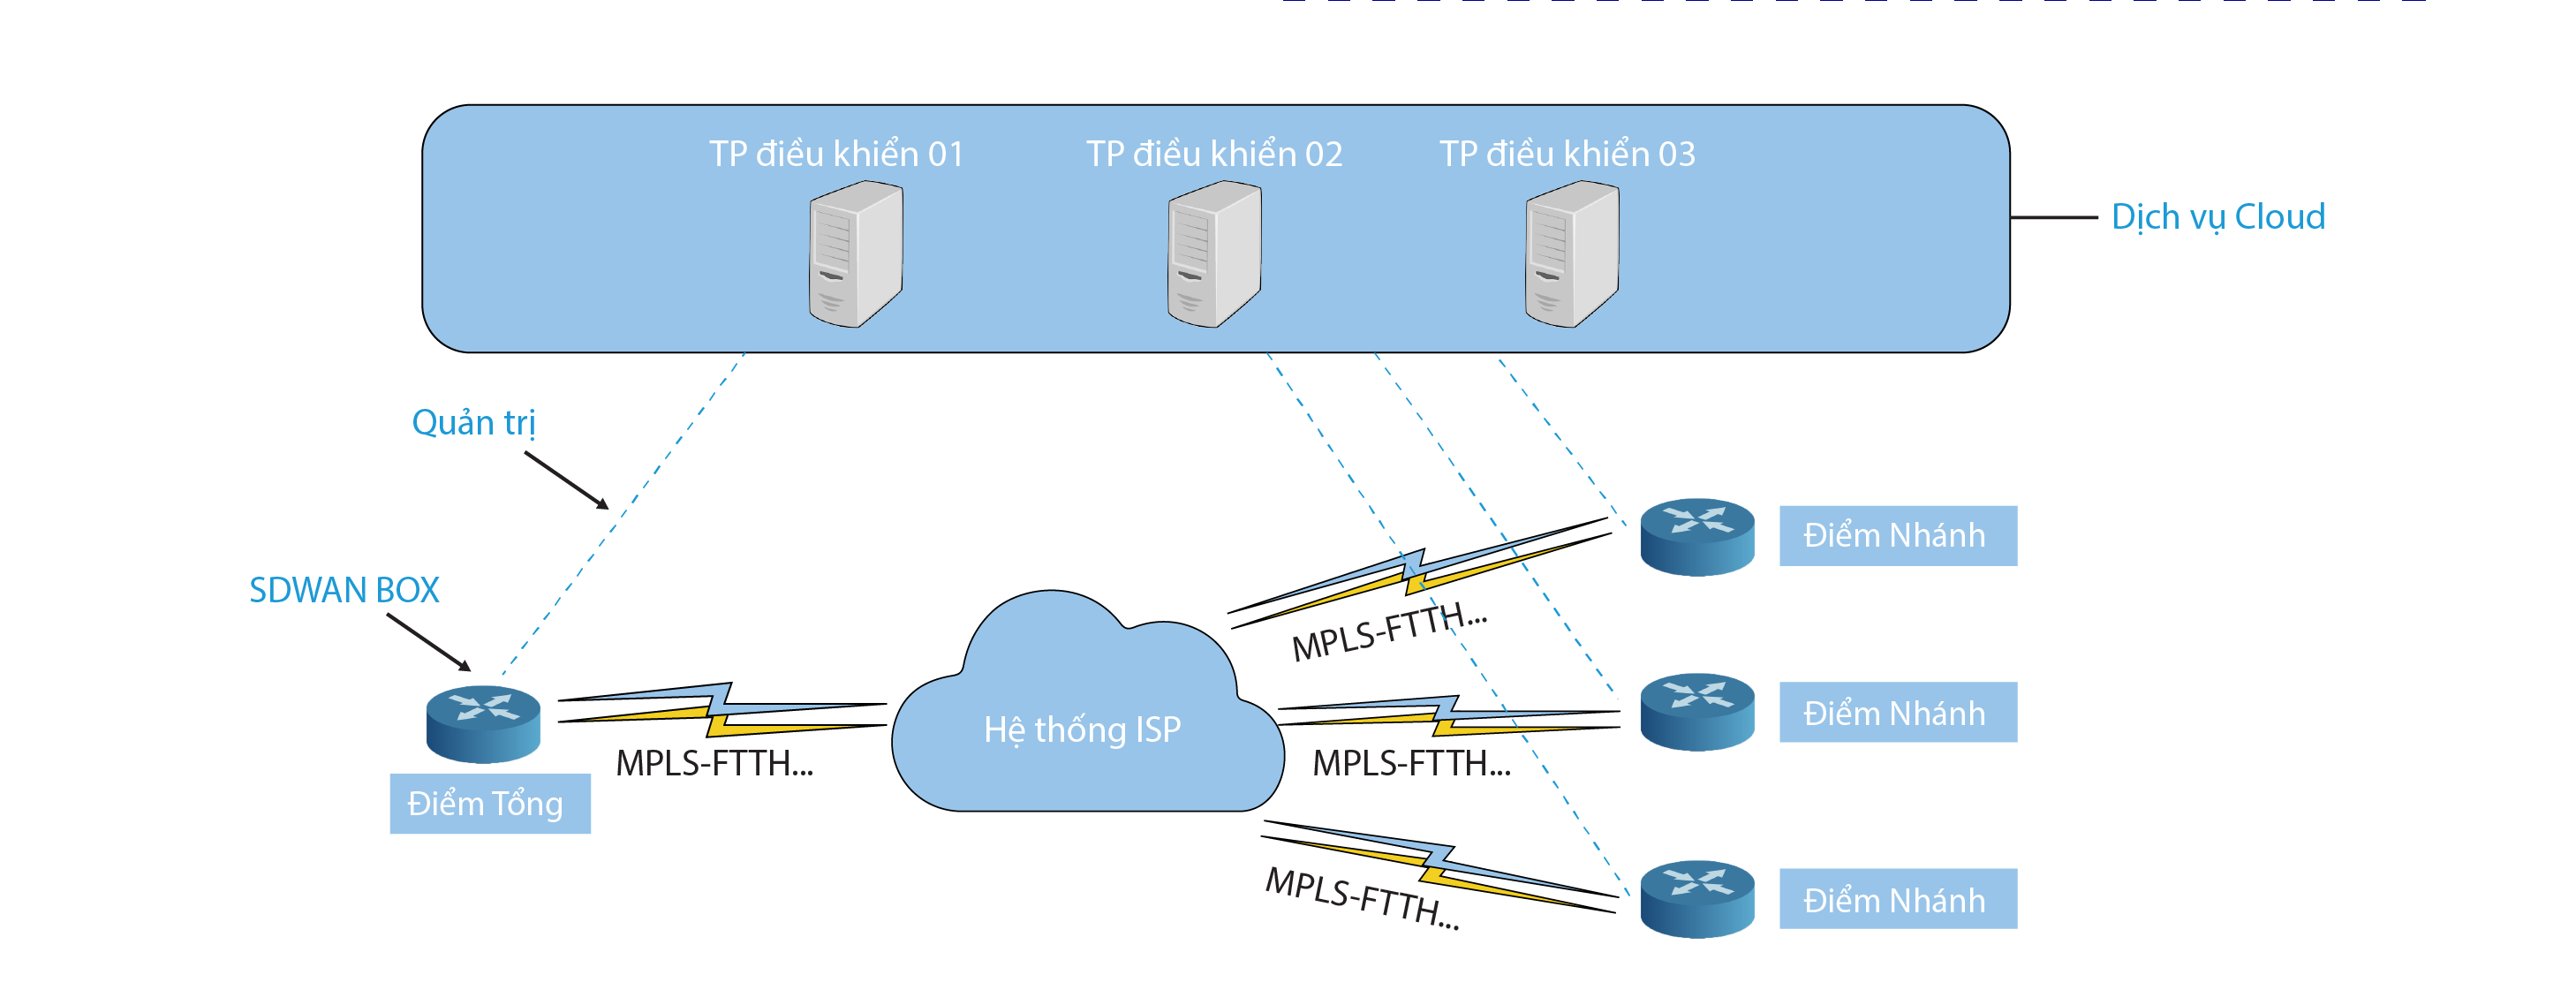 Cấu hình cân bằng tải 2 line Internet trên Router Cisco